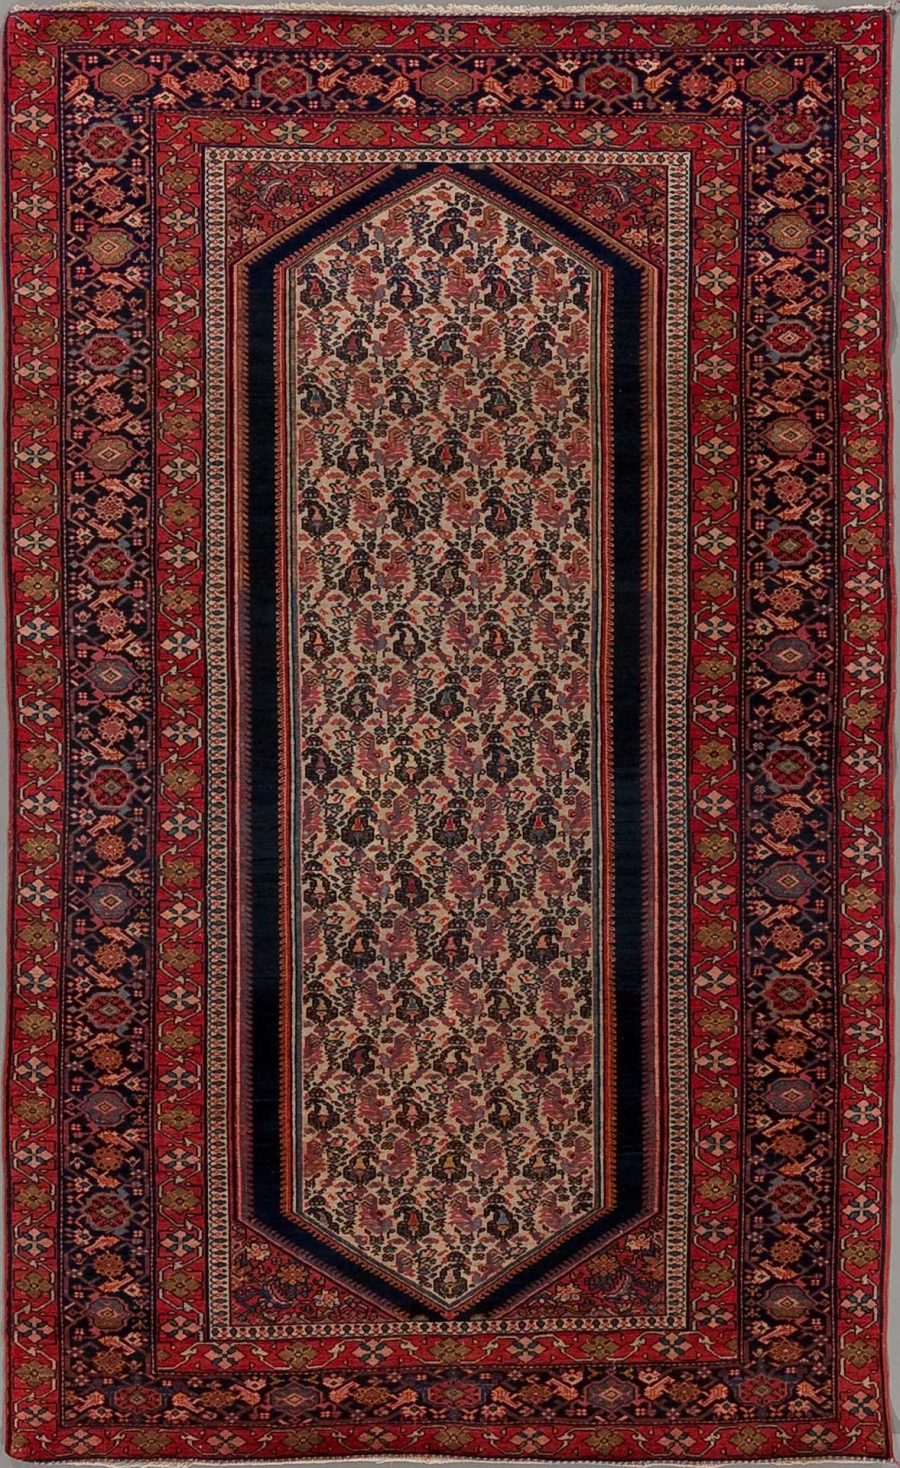 Langer, traditioneller handgeknüpfter Teppich mit geometrischem und floralem Muster in Rottönen, umgeben von mehrfachen Bordüren mit dunkleren Rahmen und einer zentralen achteckigen Medaillonform.